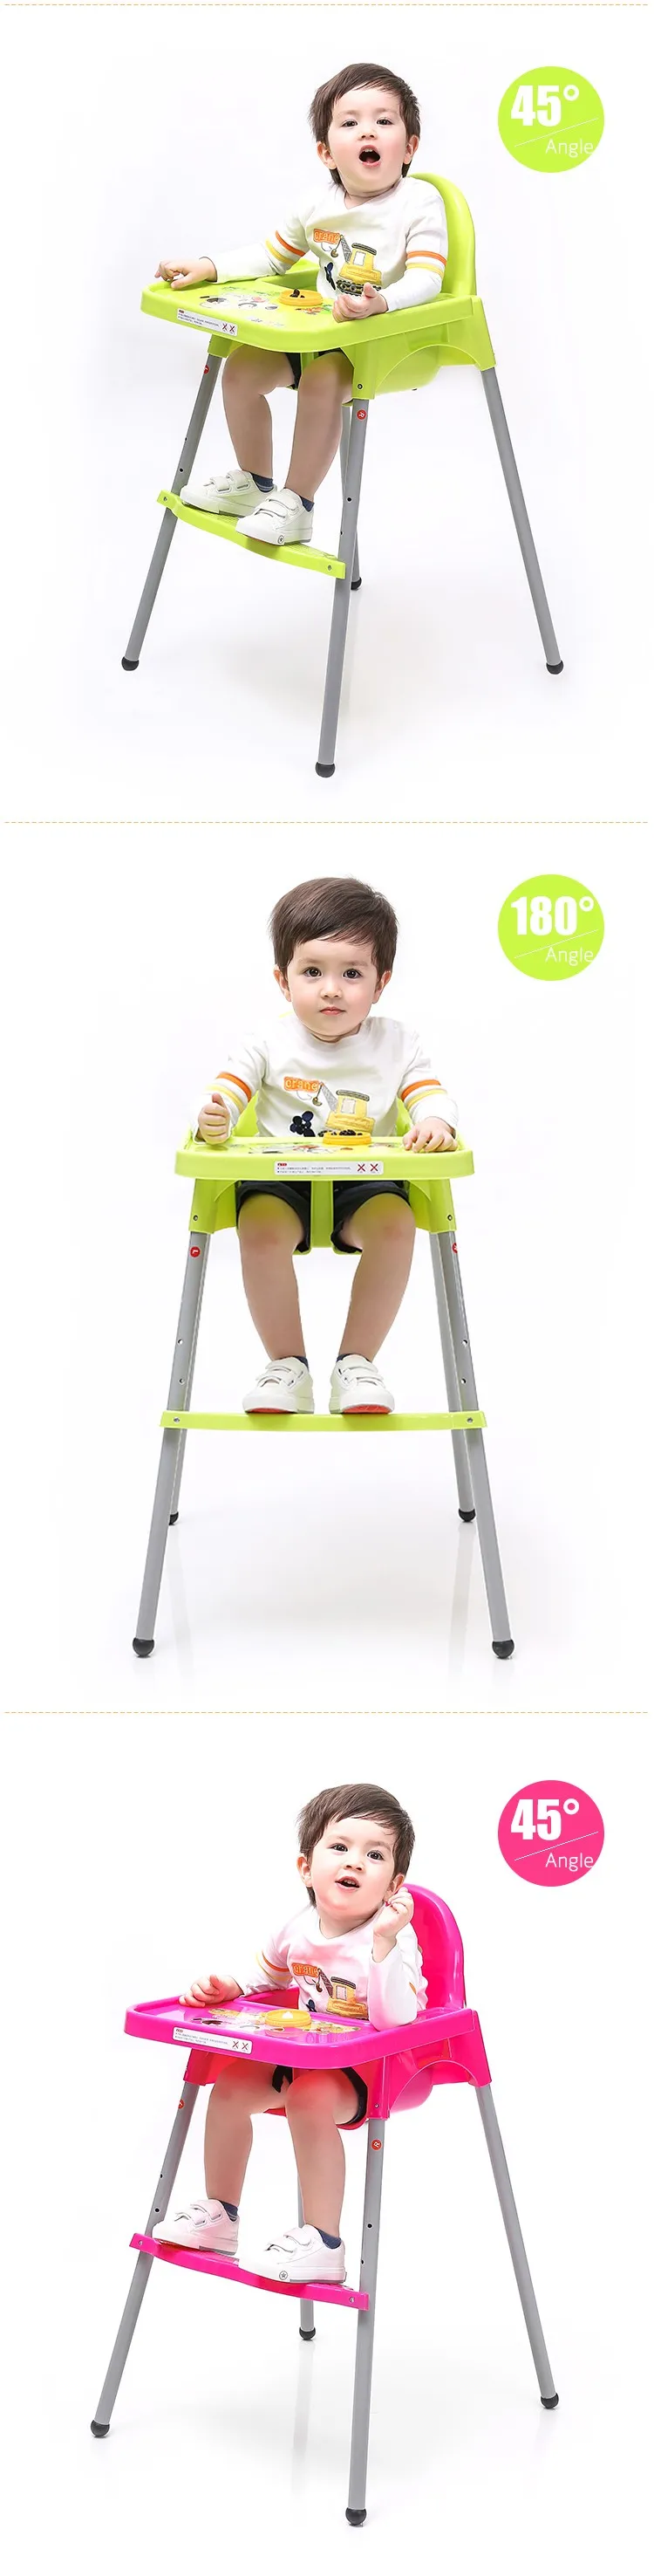 Здоровый Уход детский стульчик для кормления Стул простой Портативный Путешествия Carry шезлонг Haute Enfant